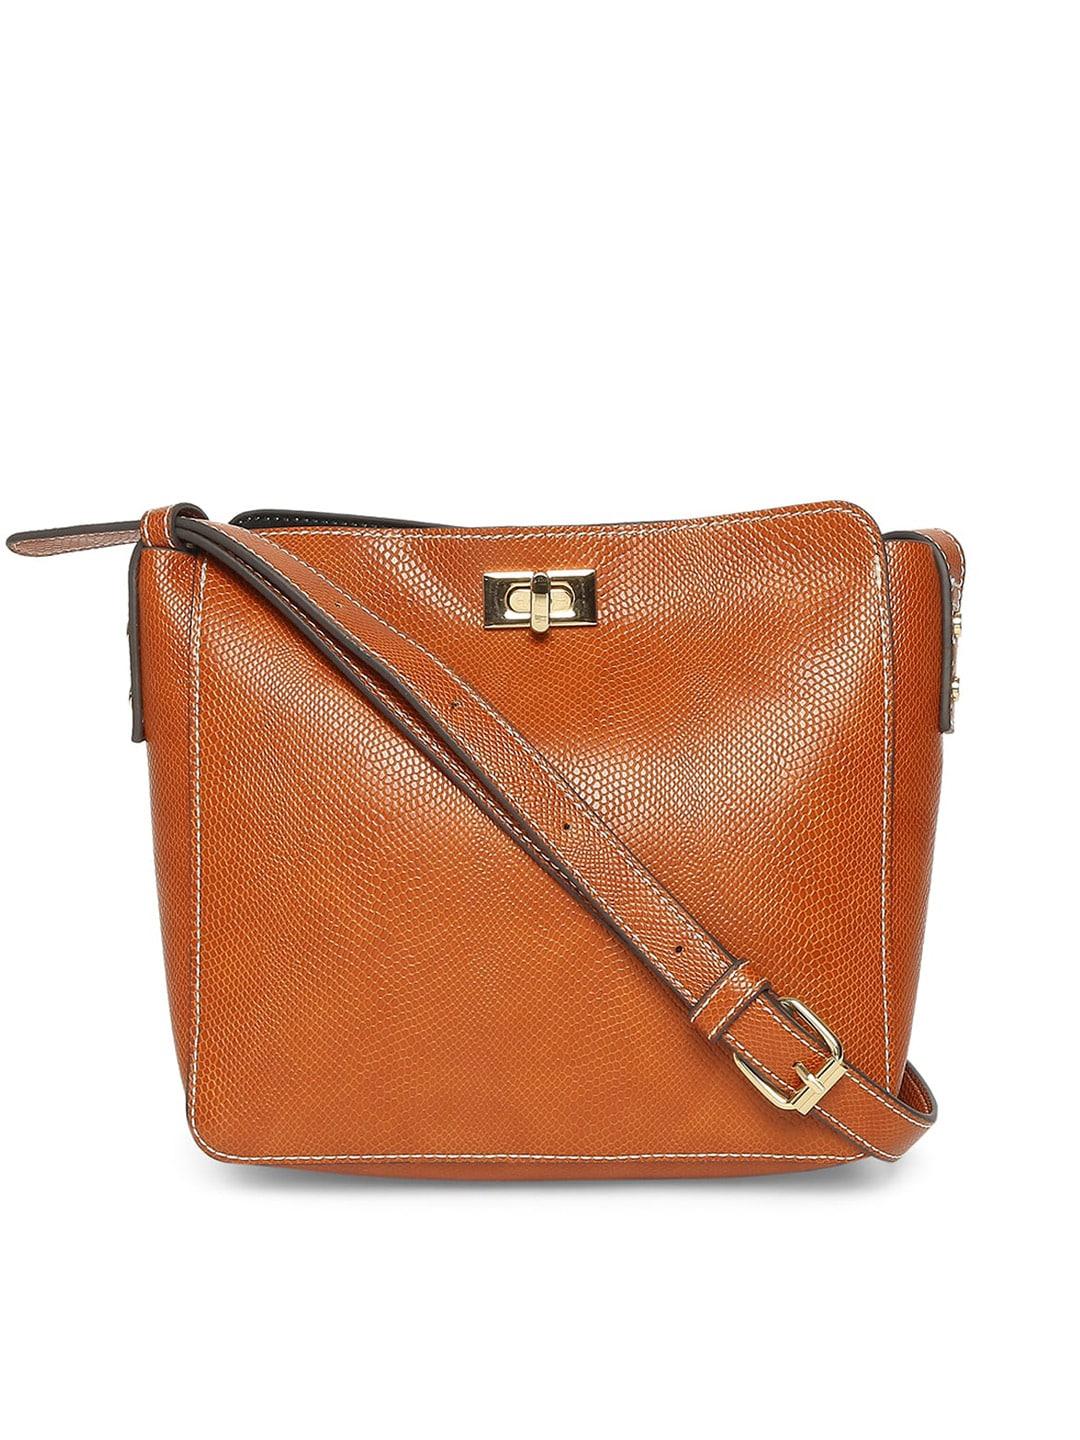 Accessorize Women Orange Textured Structured Twist Lock Sling Bag